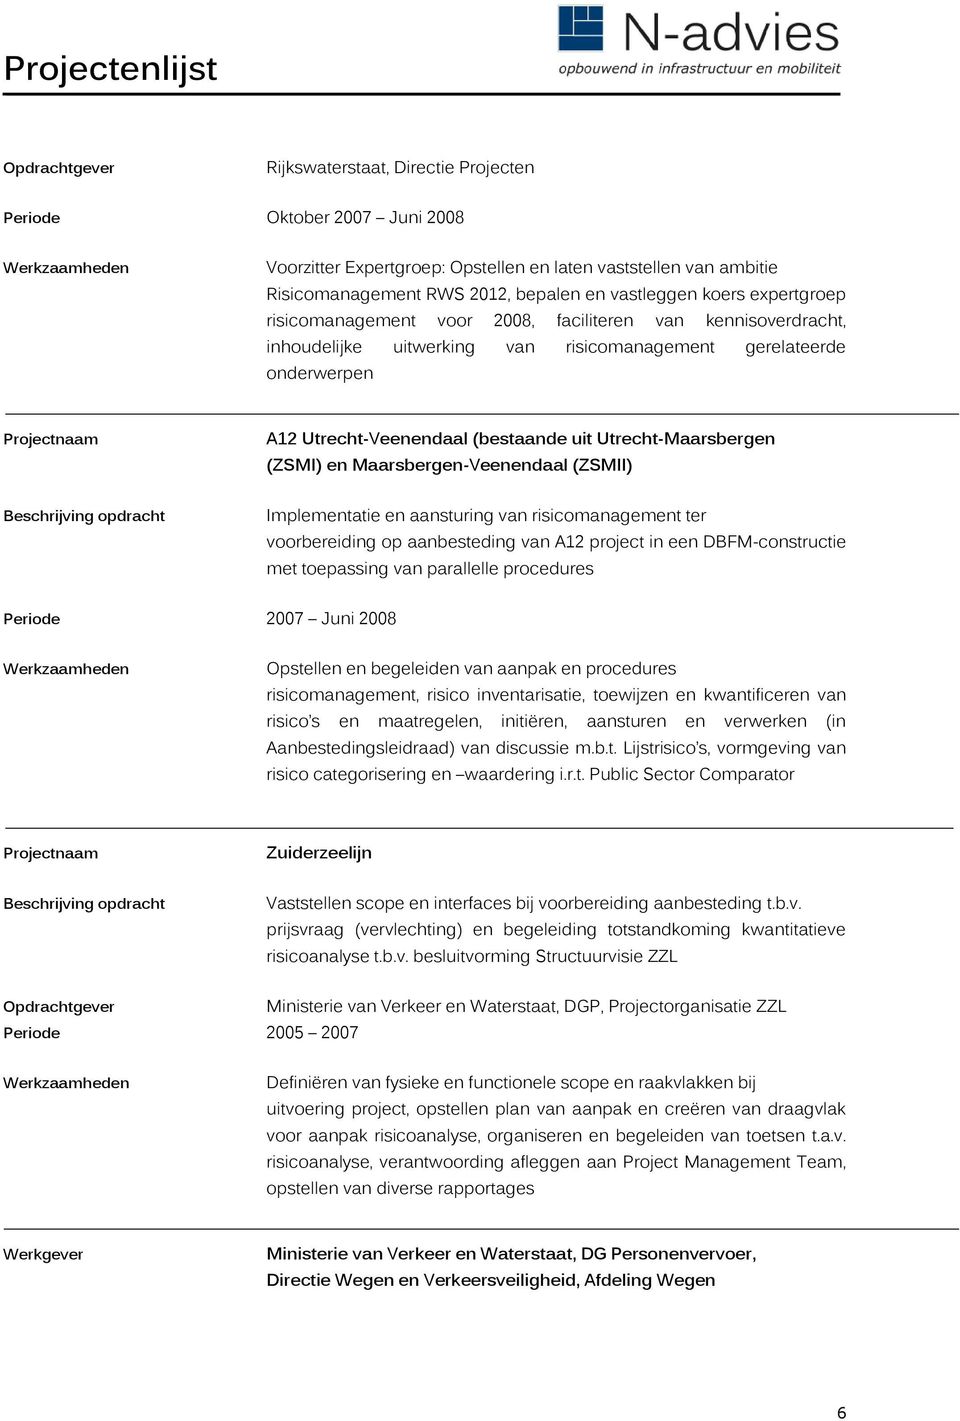 Utrecht-Maarsbergen (ZSMI) en Maarsbergen-Veenendaal (ZSMII) Implementatie en aansturing van risicomanagement ter voorbereiding op aanbesteding van A12 project in een DBFM-constructie met toepassing